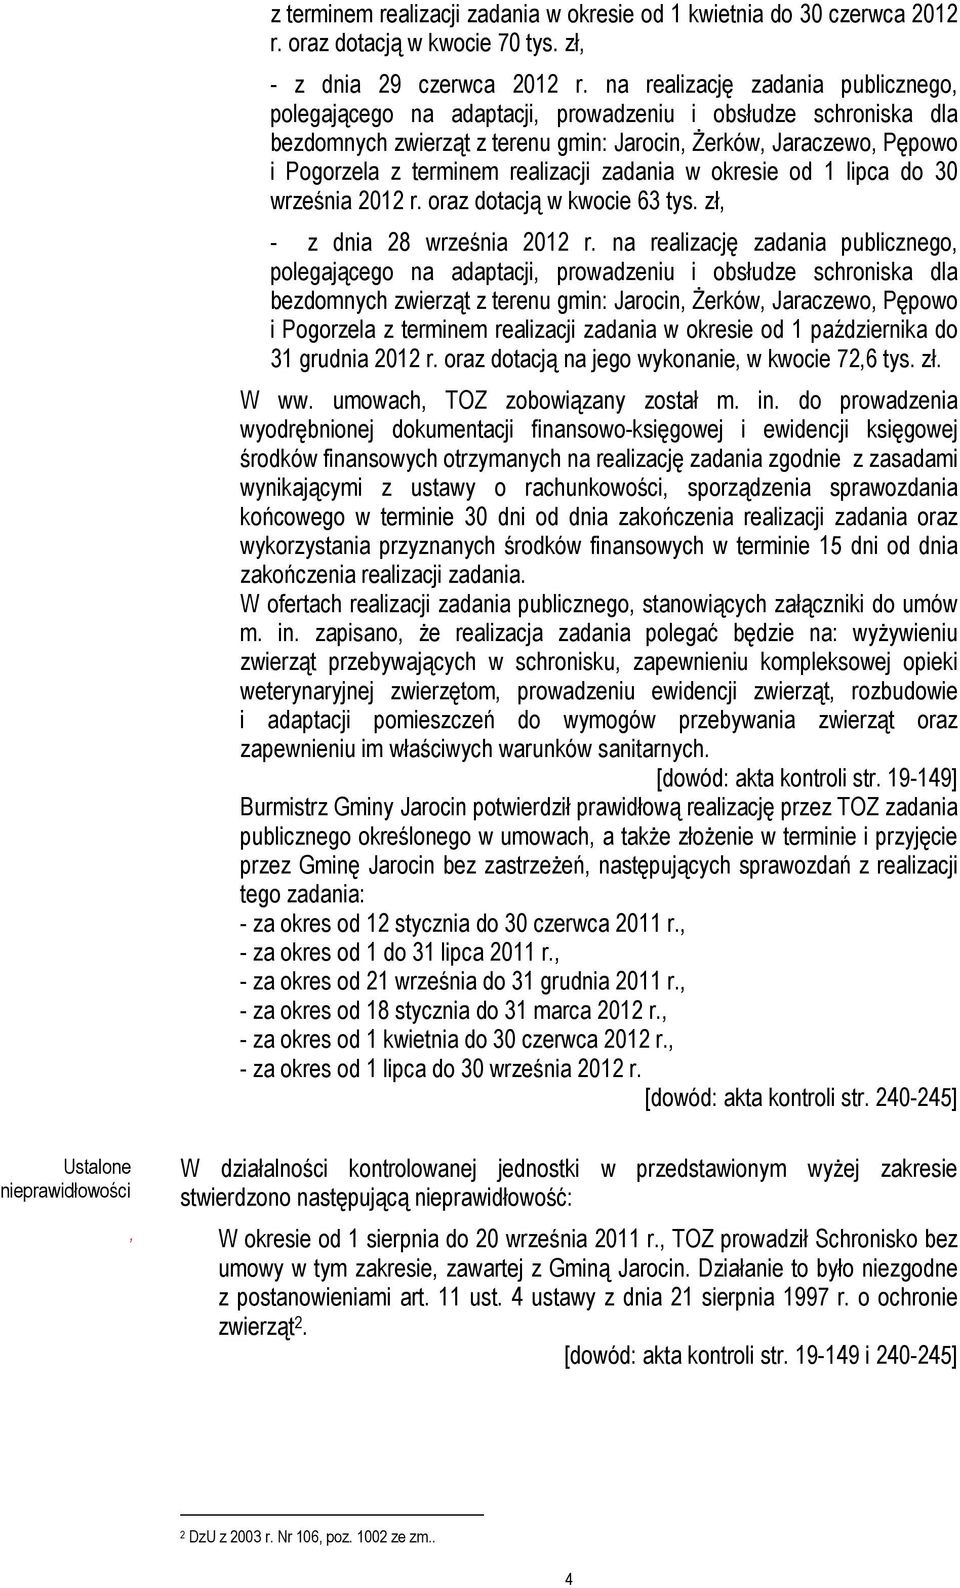 realizacji zadania w okresie od 1 lipca do 30 września 2012 r. oraz dotacją w kwocie 63 tys. zł, - z dnia 28 września 2012 r.  realizacji zadania w okresie od 1 października do 31 grudnia 2012 r.